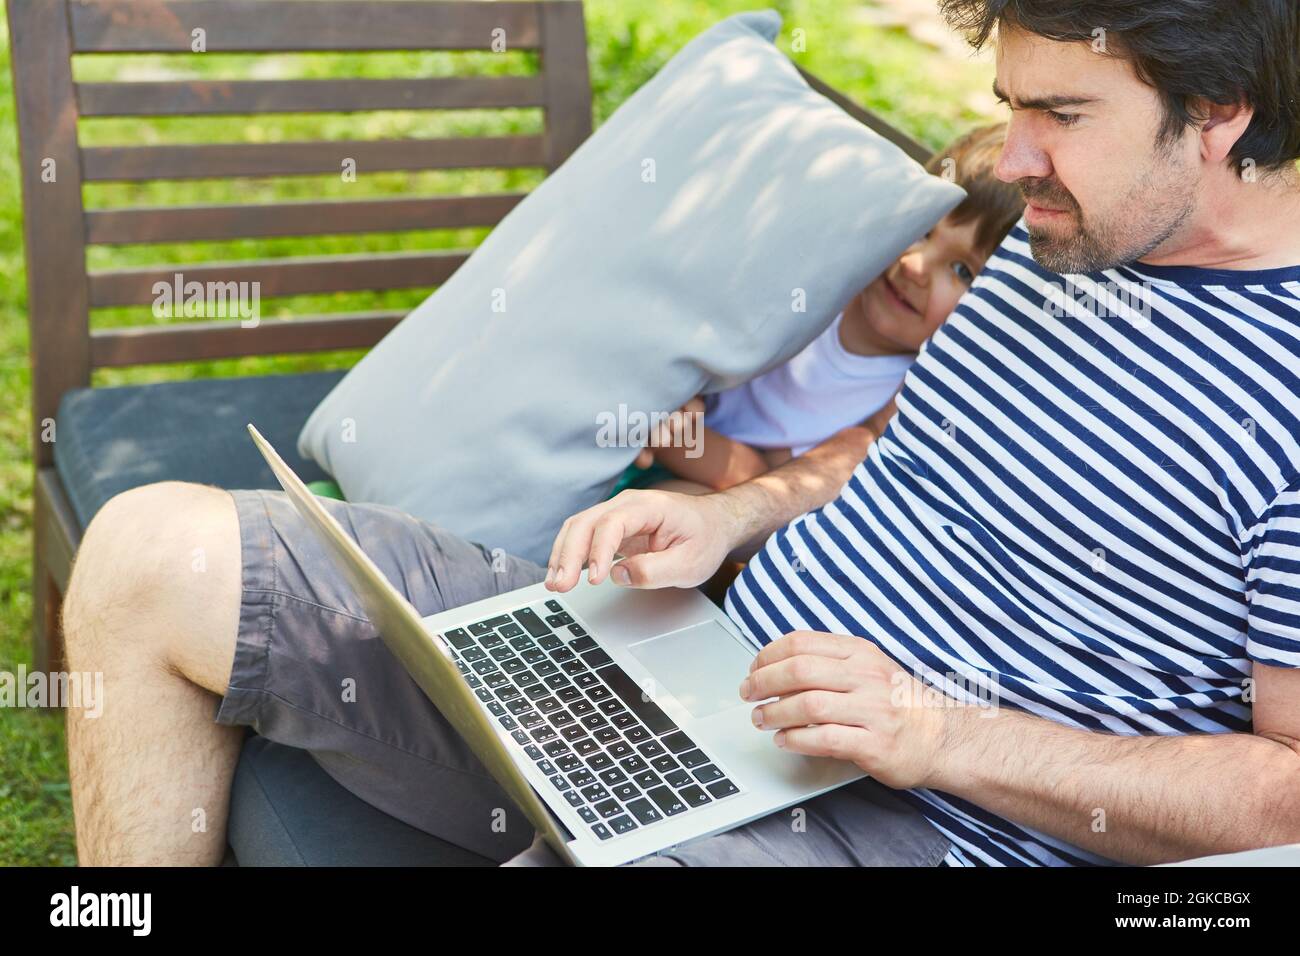 Il bambino disturba il padre sul PC portatile durante una videoconferenza in giardino durante le vacanze estive Foto Stock